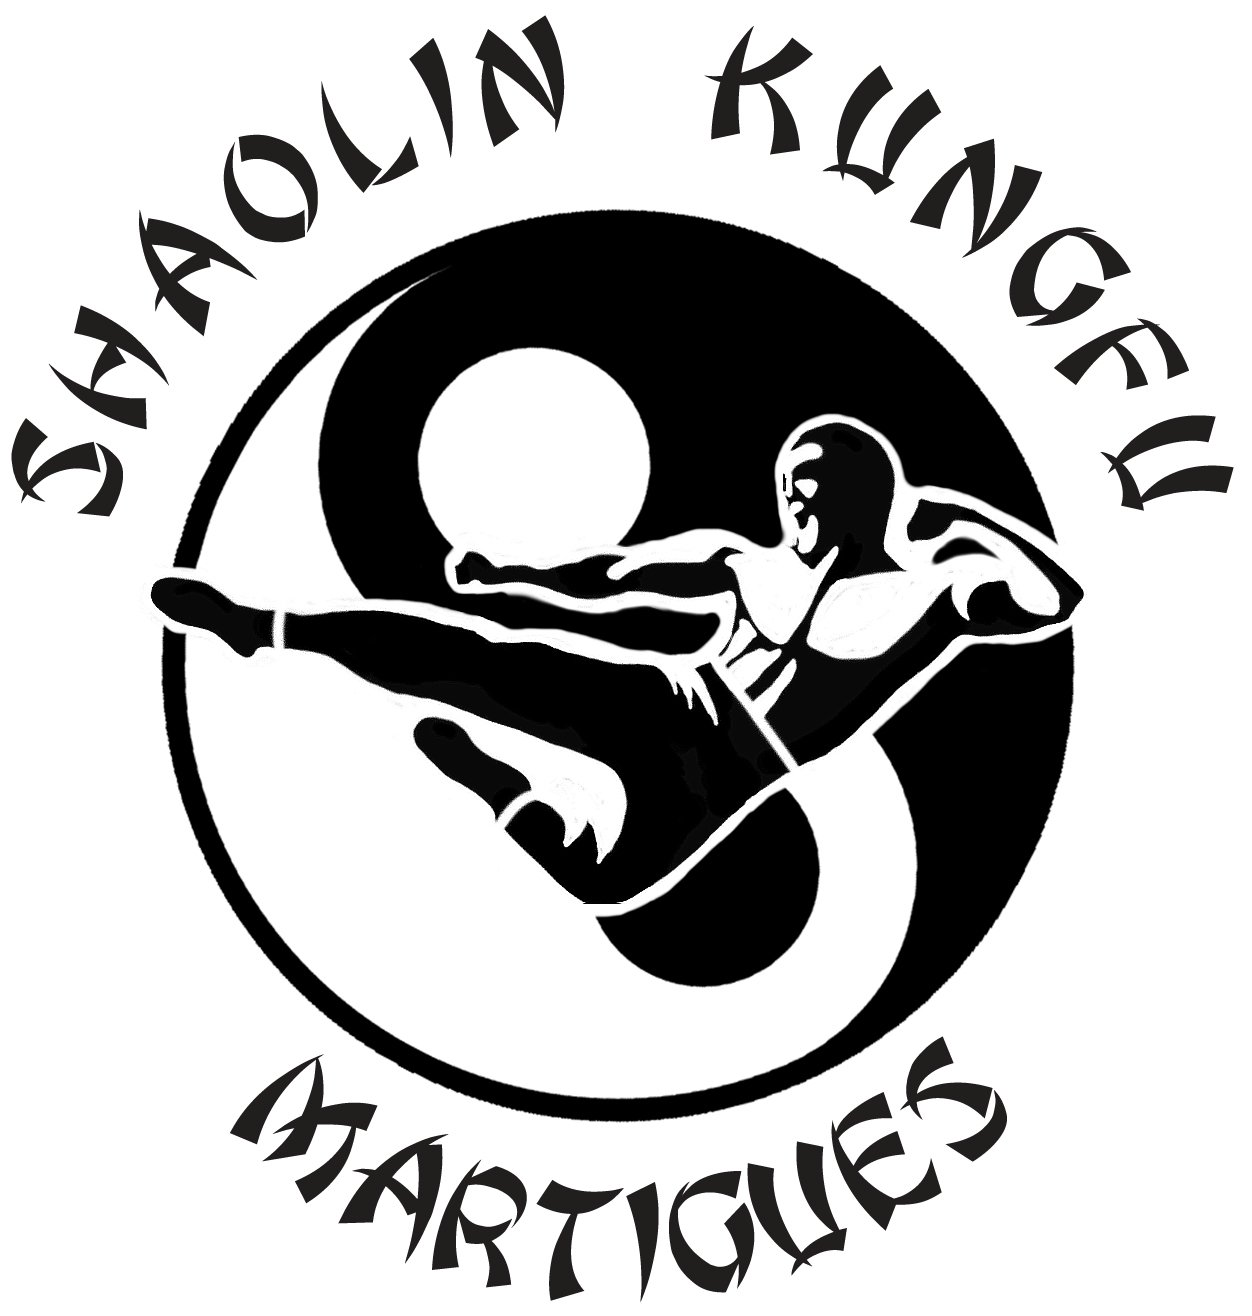 Association Shaolin Kung fu